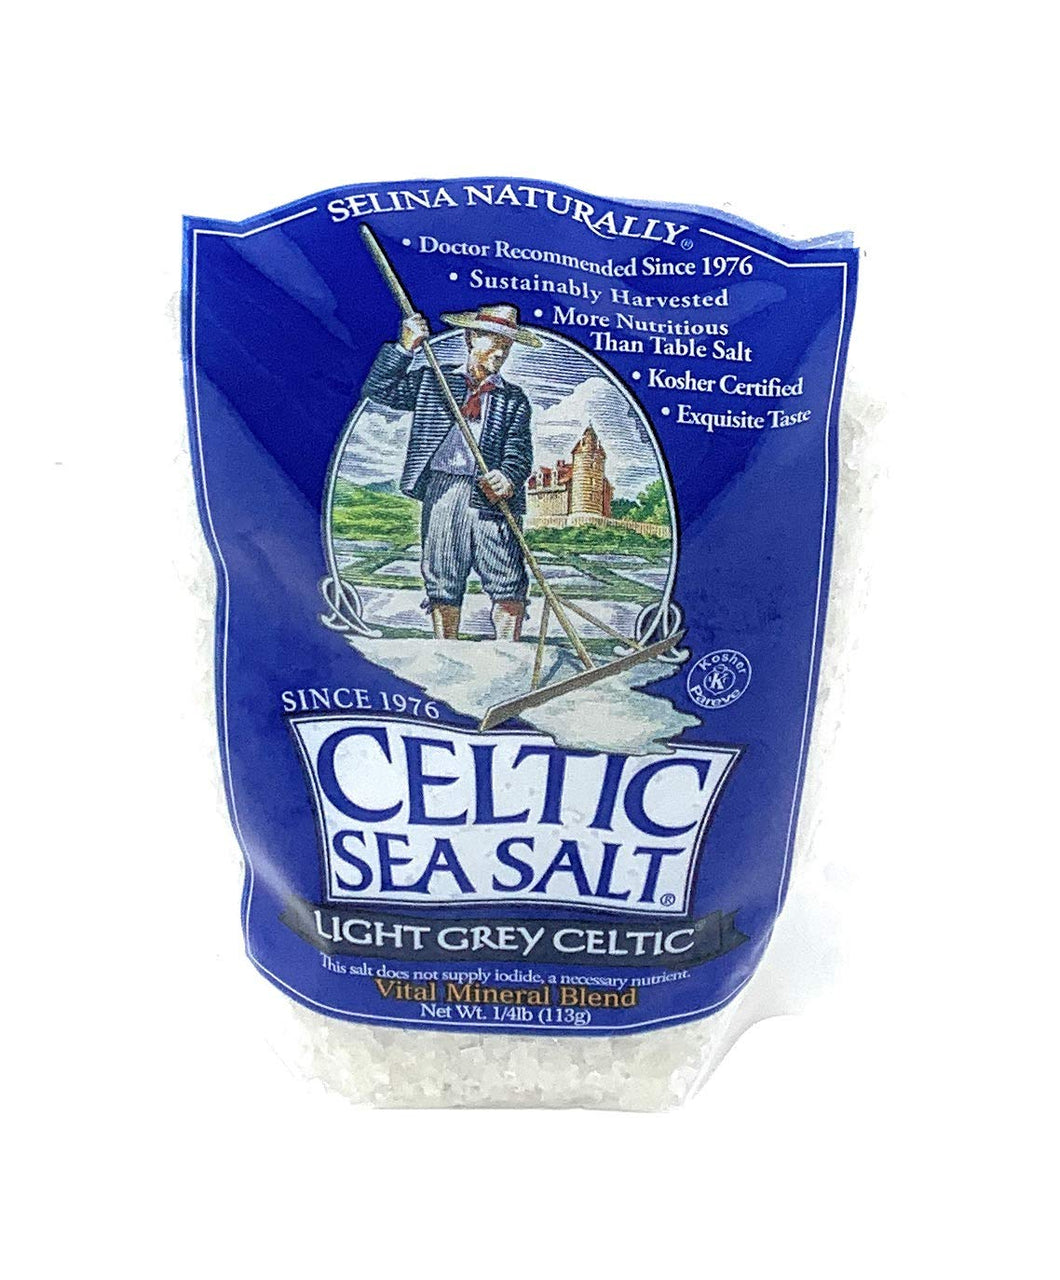 Celtic Sea Salt Light Grey Coarse Sea Salt, 4oz (1/4 lb) Resealable Bag